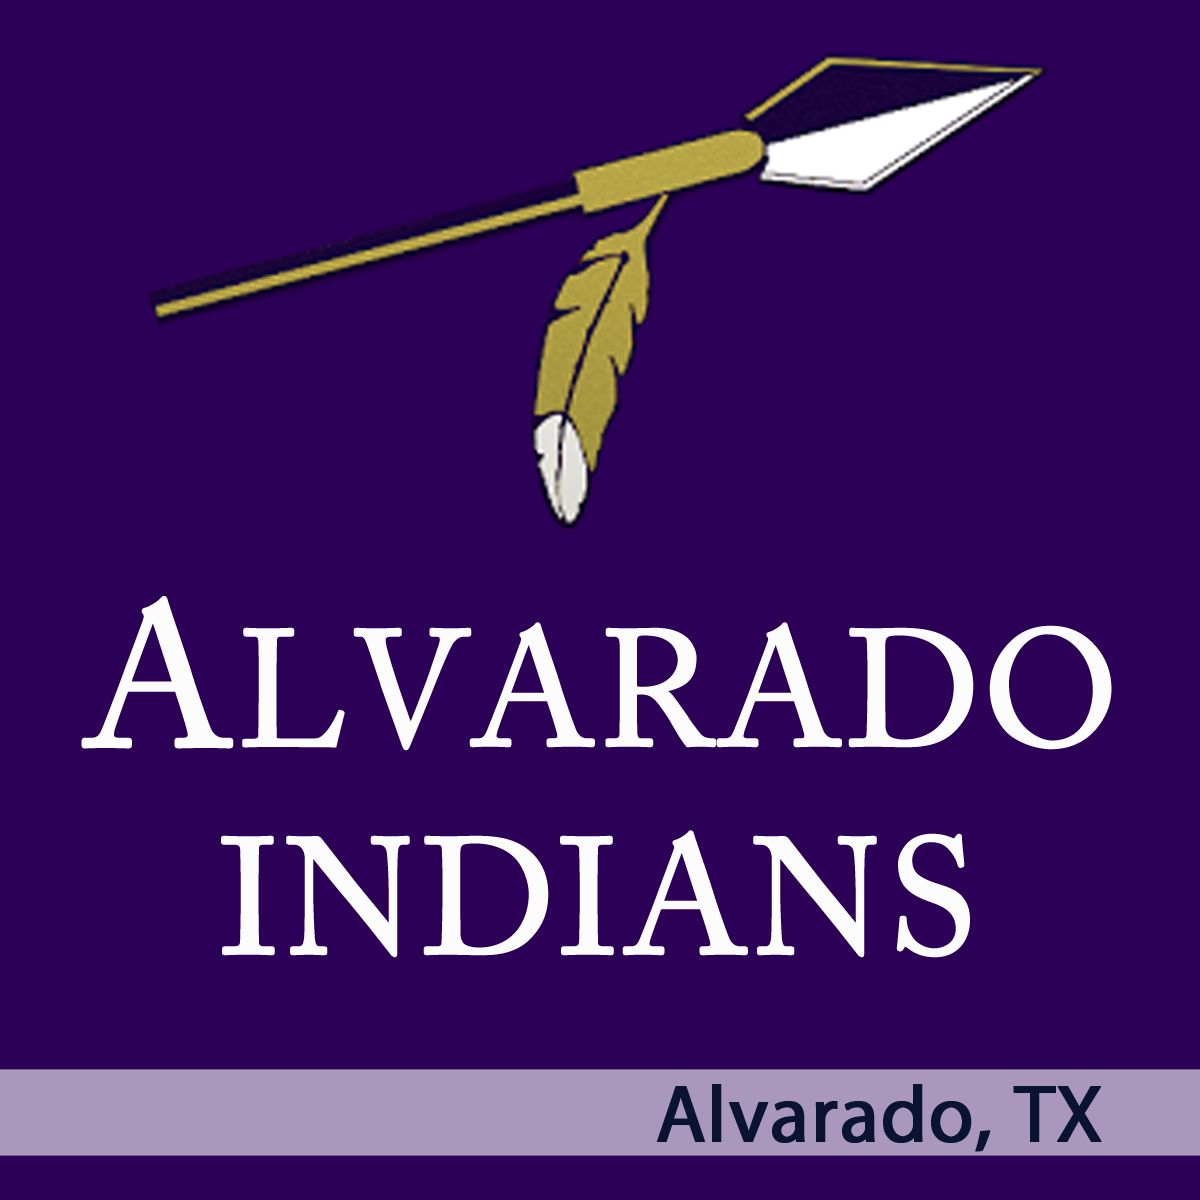 Alvarado, TX